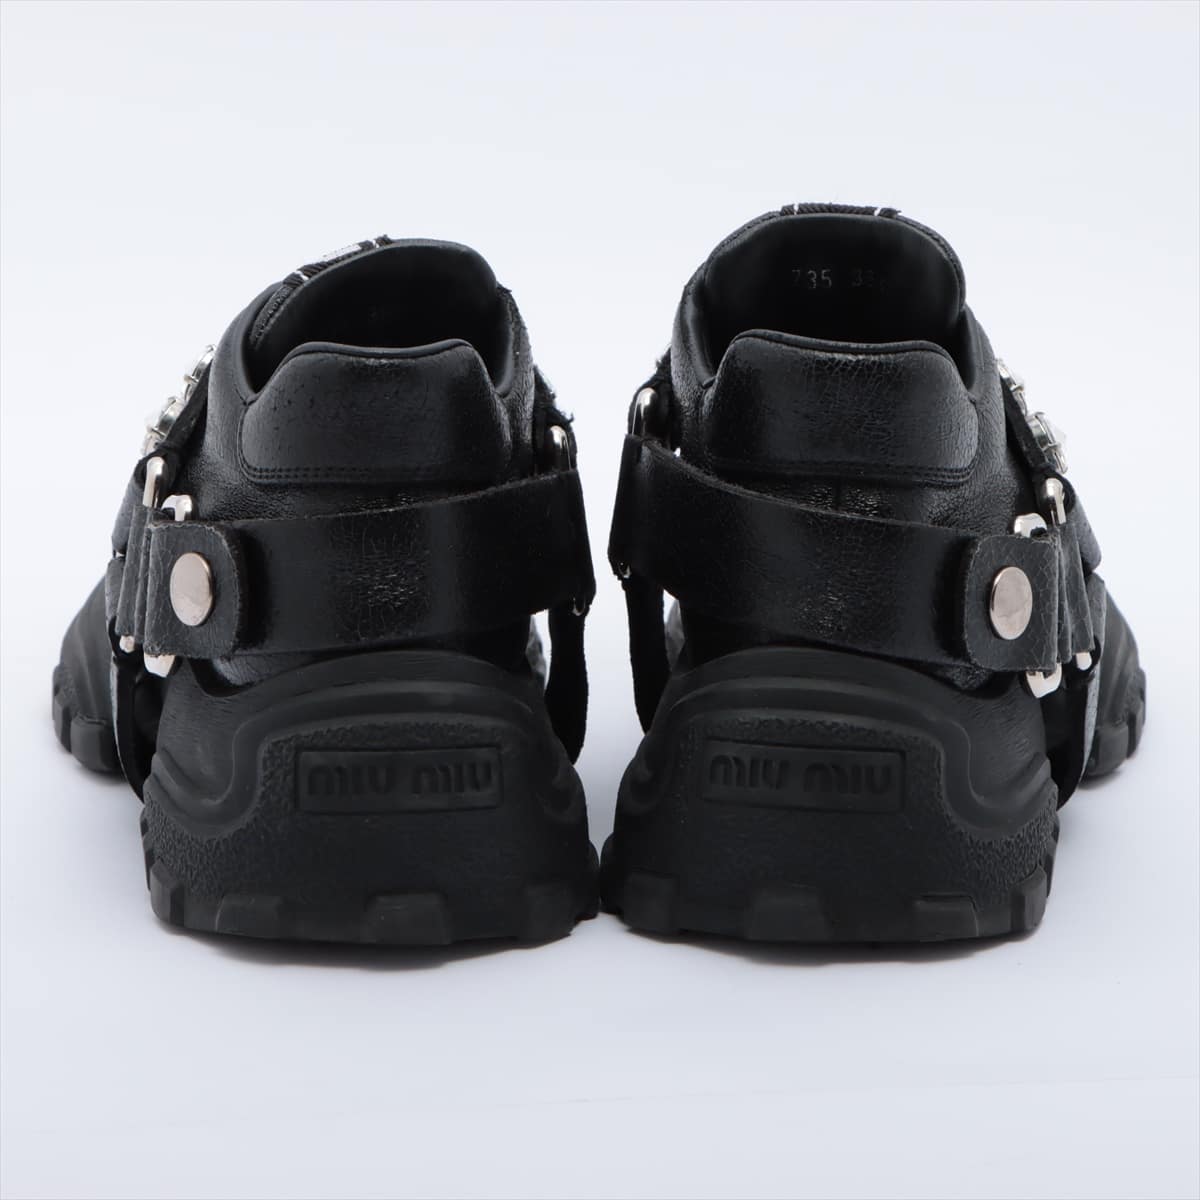 Miu Miu Leather Sneakers 36.5 Ladies' Black Bijou